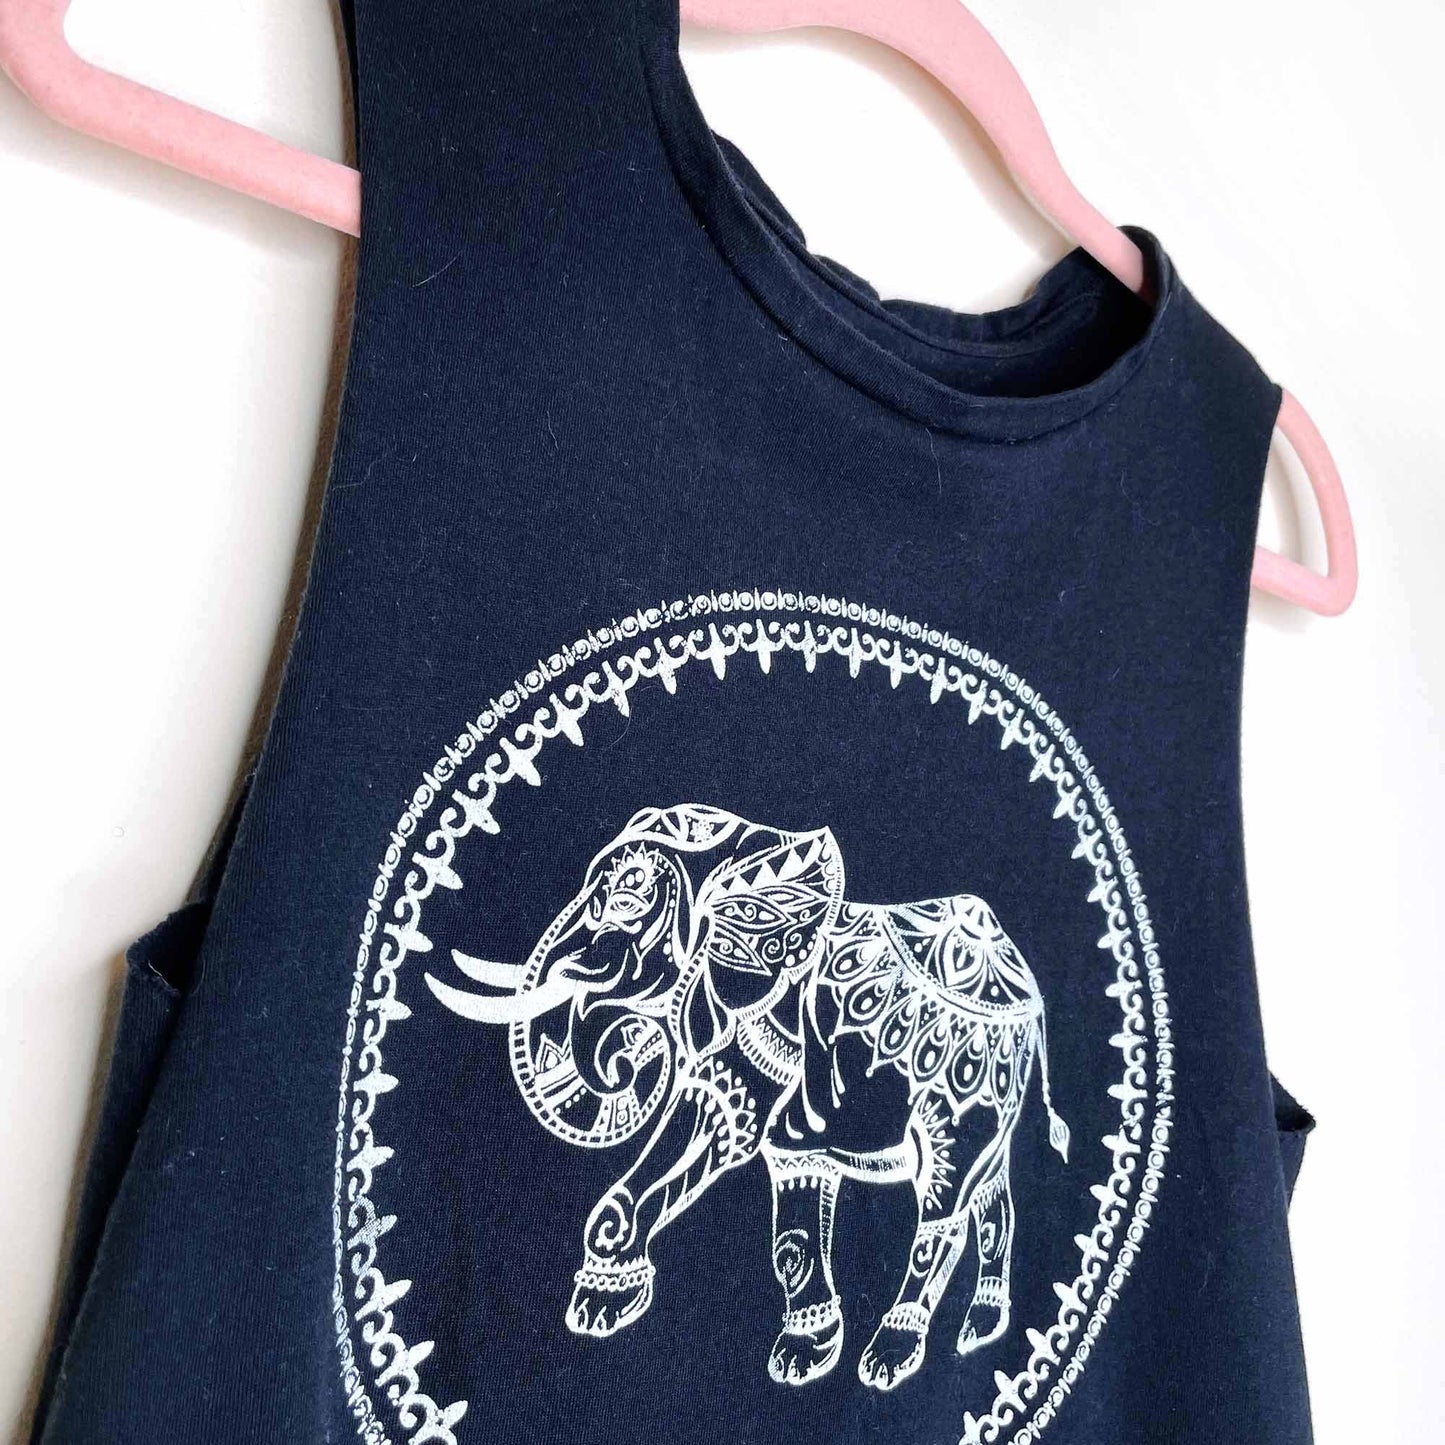 thailand elephant sleeveless crop top with fringe hem - size xs/sm